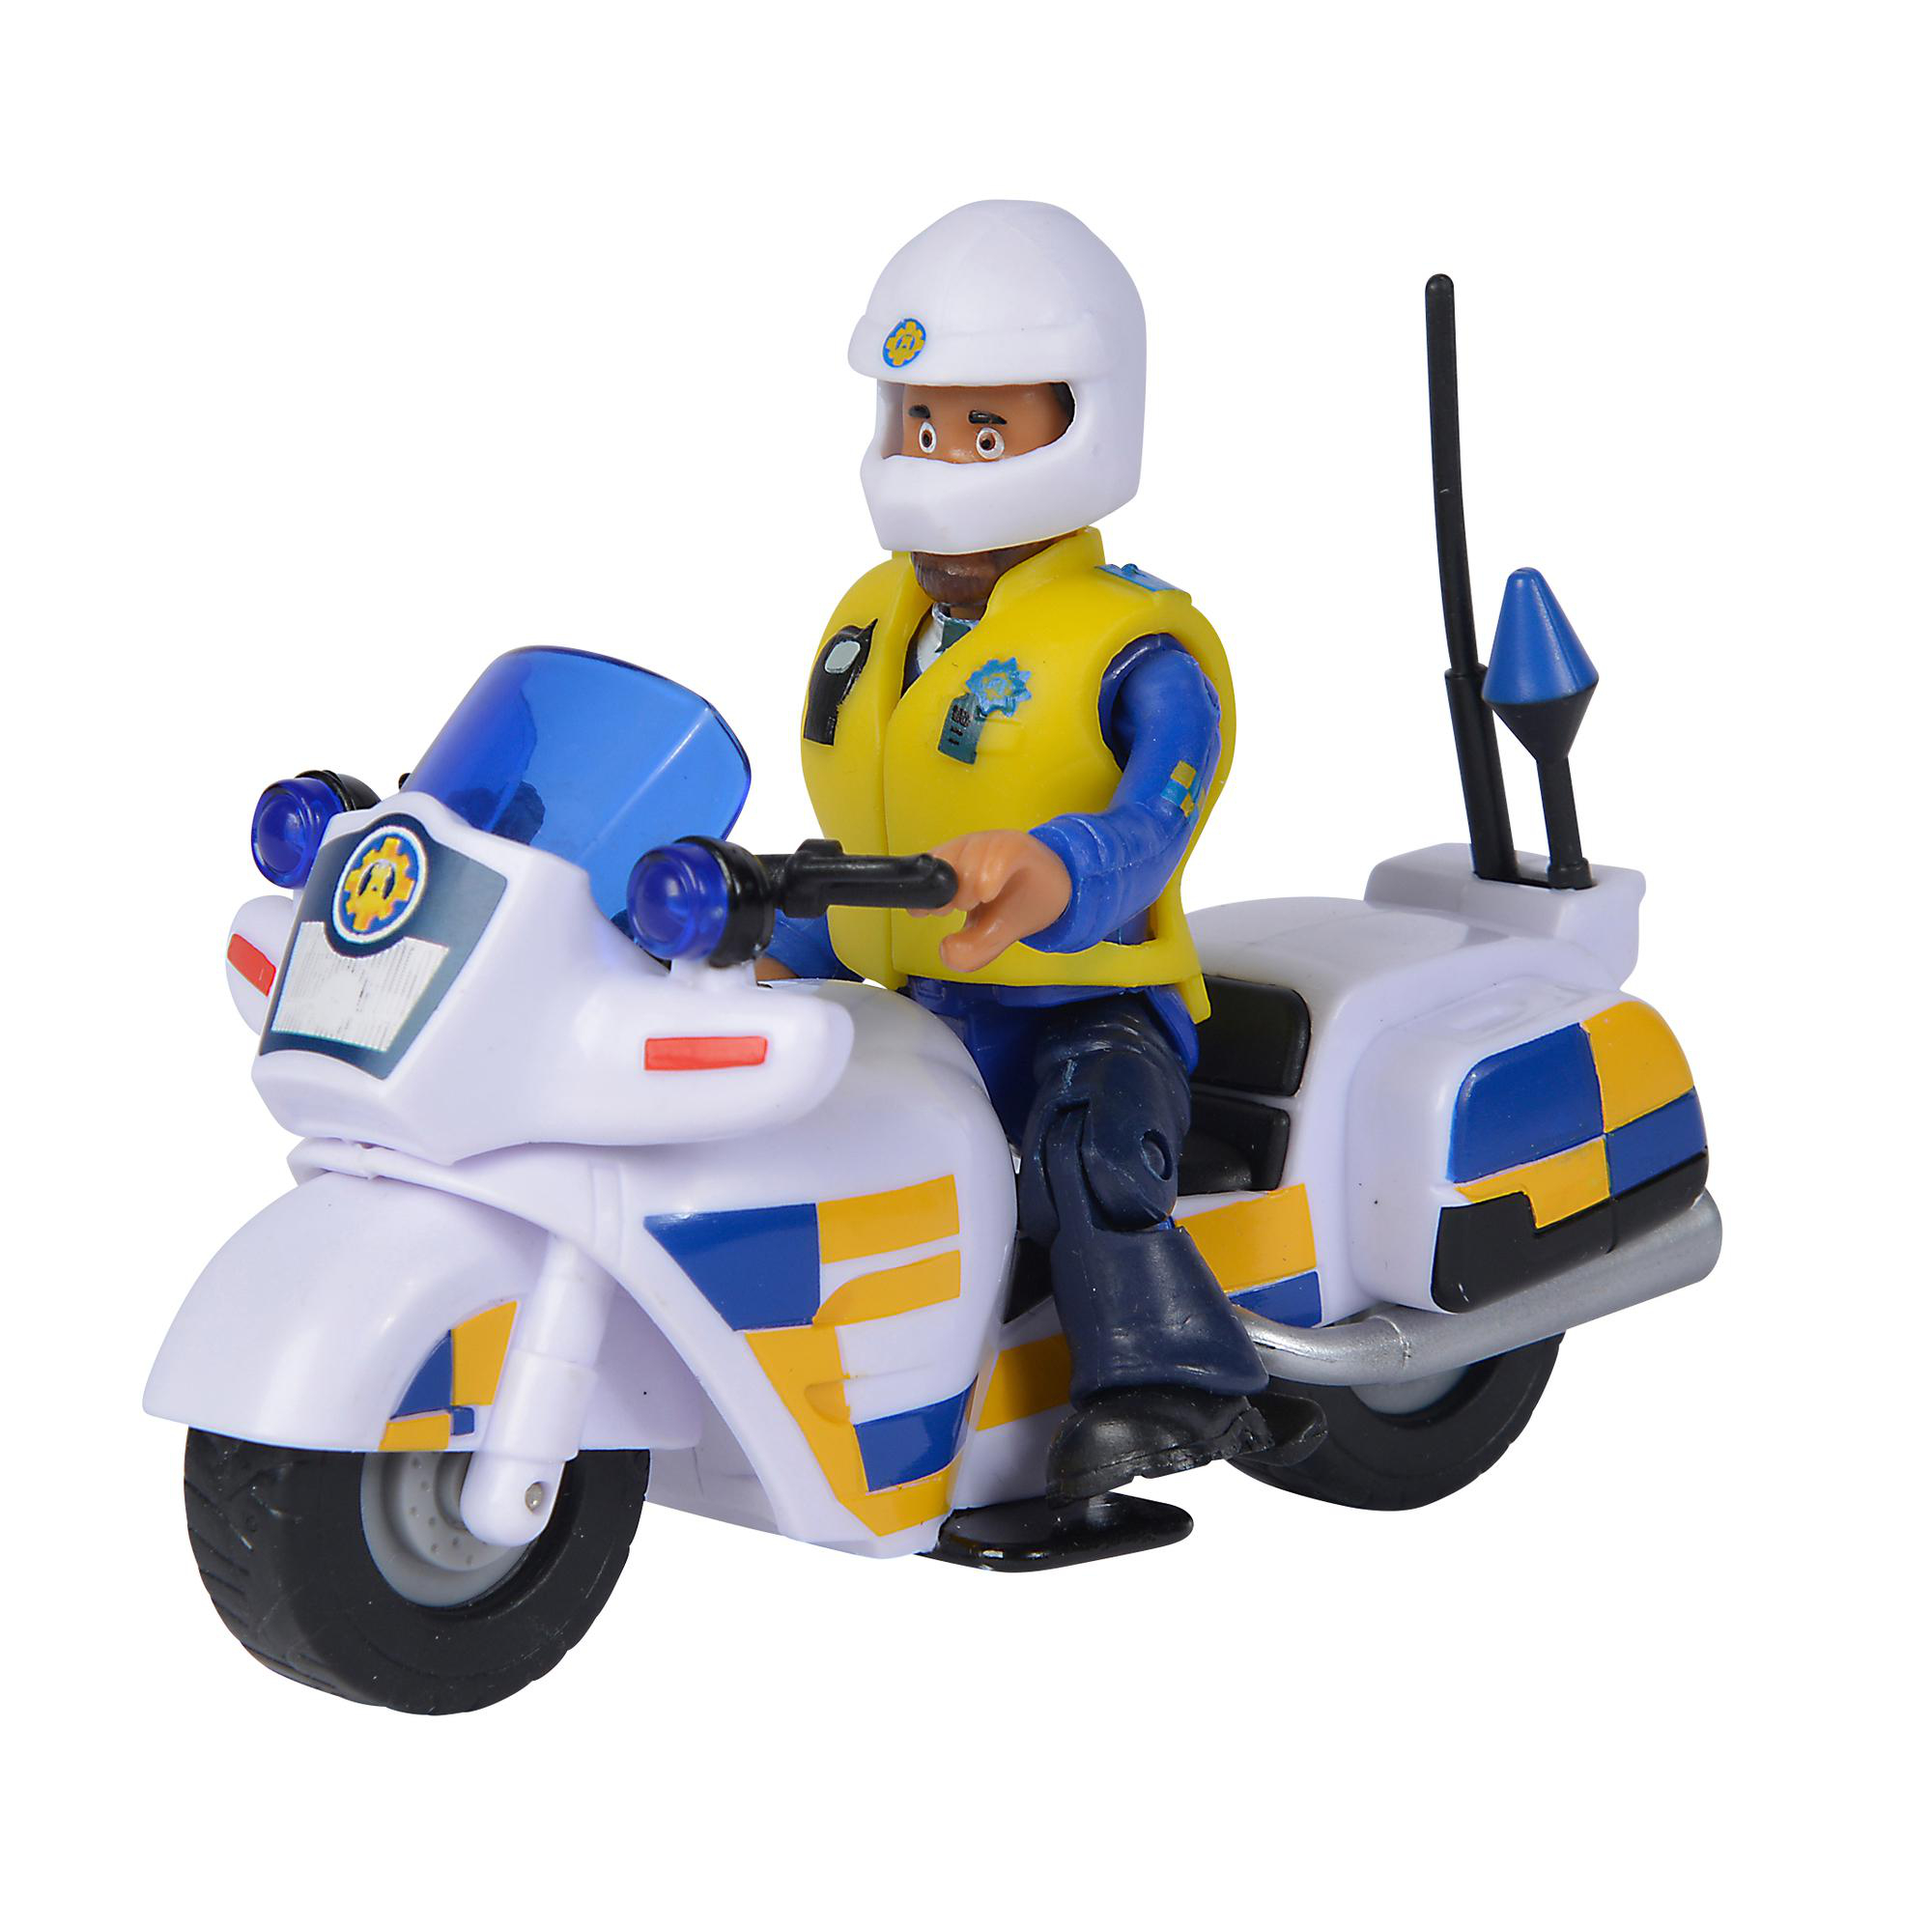 SIMBA TOYS Feuerwehrmann Figur Motorrad Mehrfarbig mit Polizei Spielset Sam